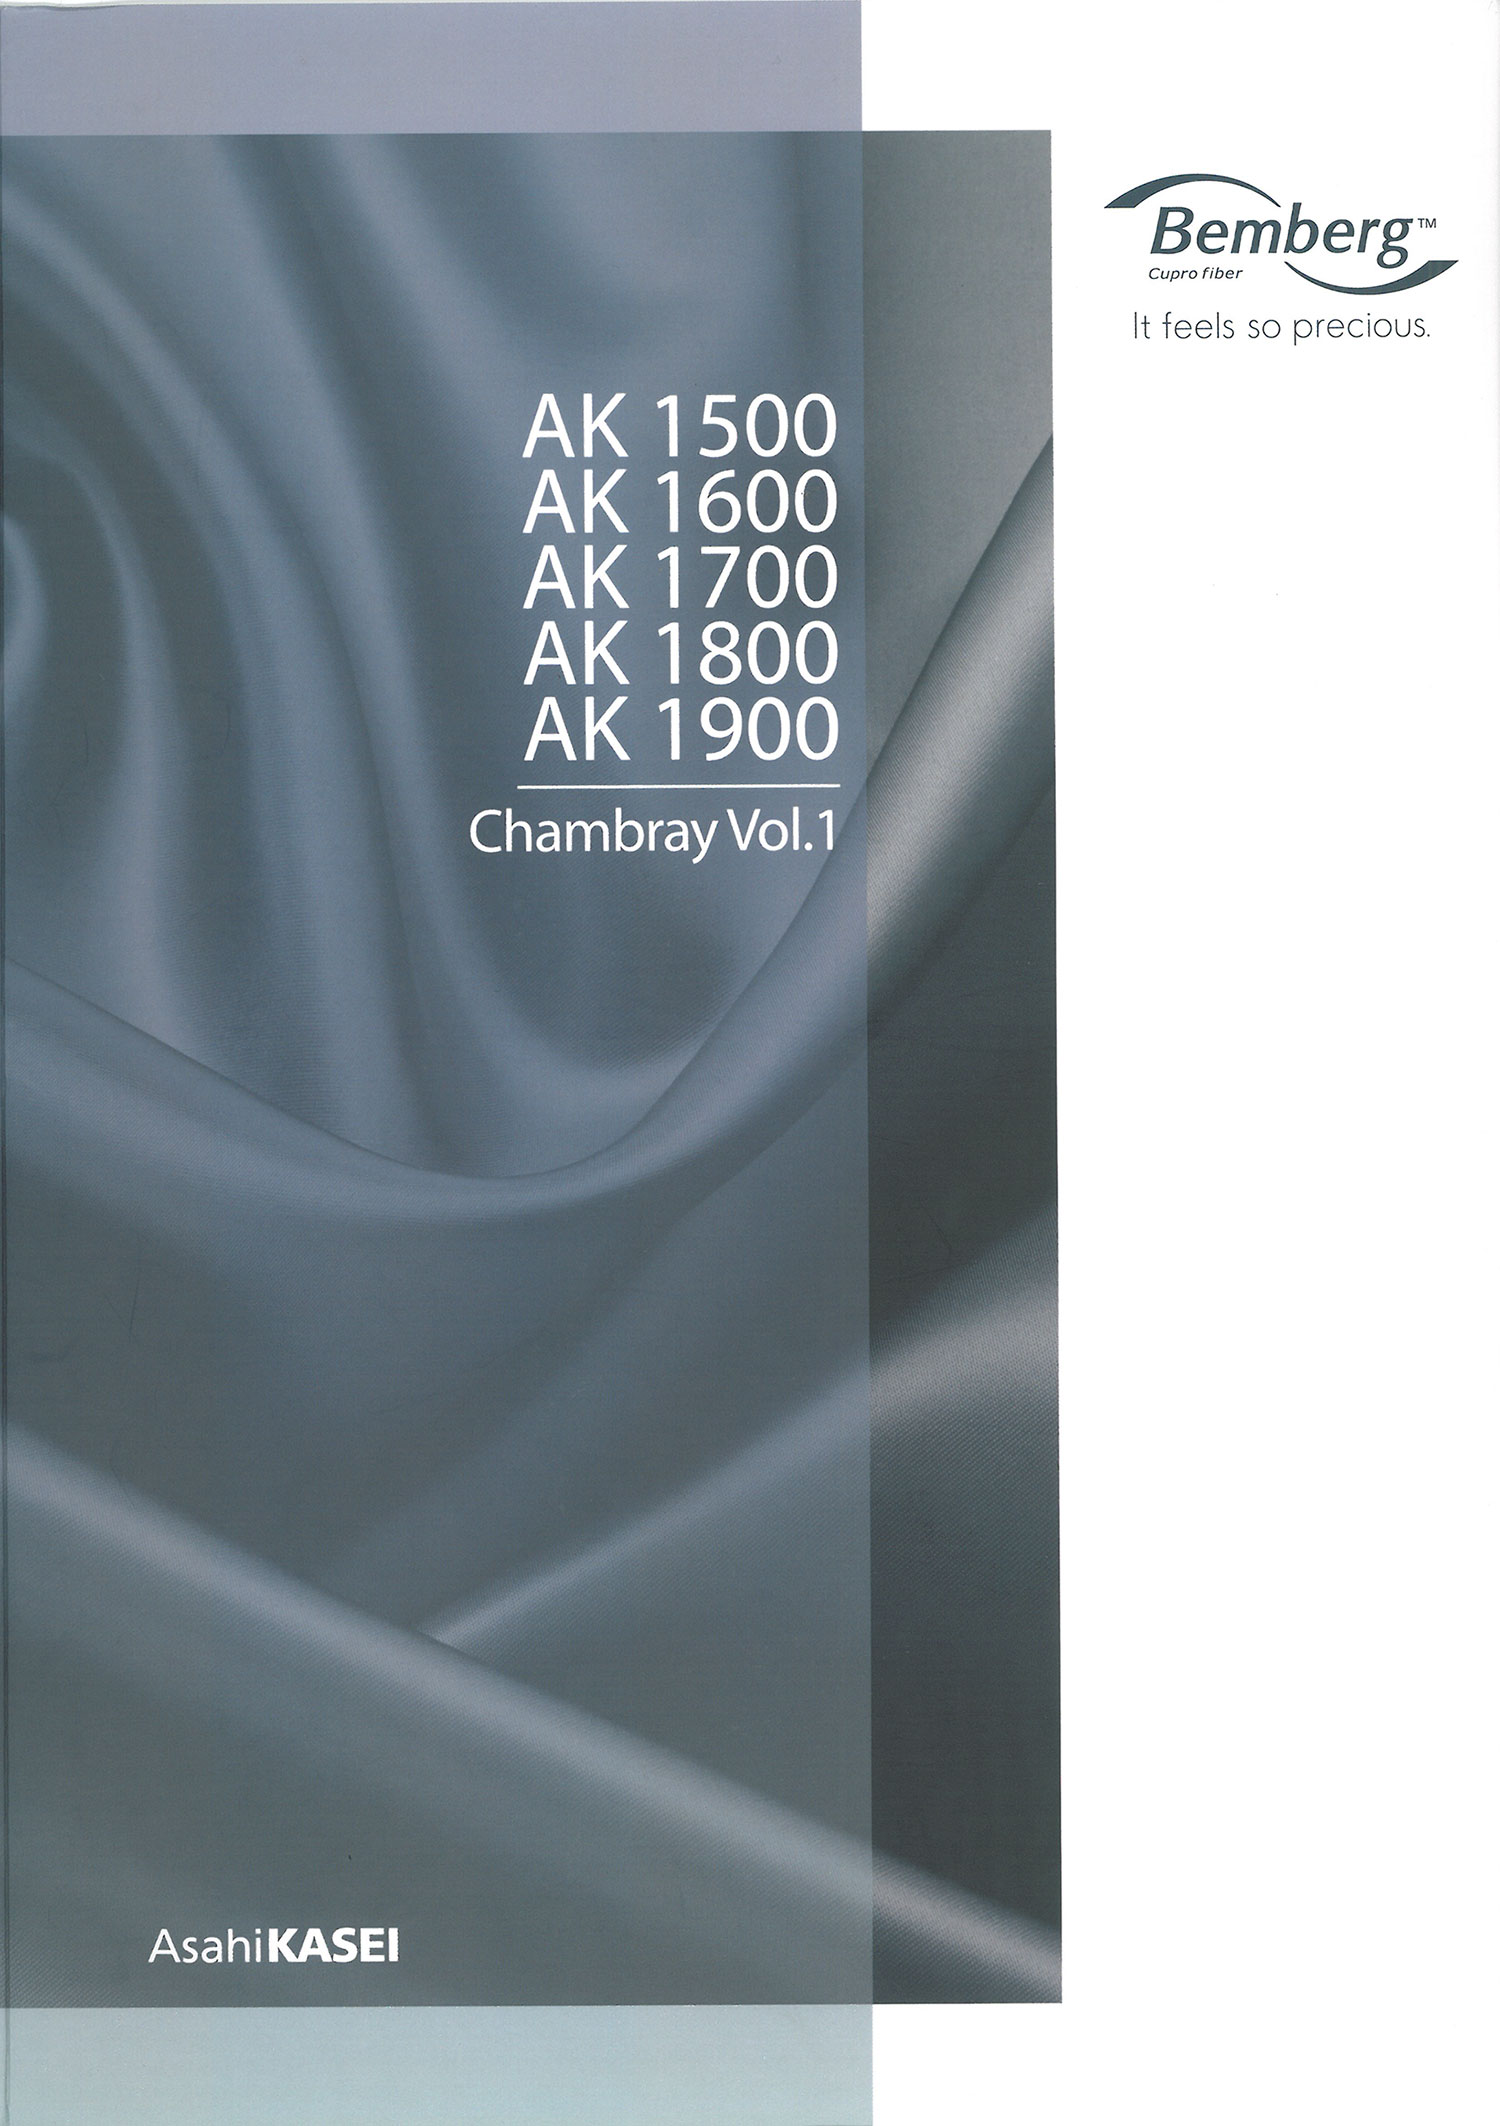 AK1500 銅氨塔夫里料（賓霸） 旭化成